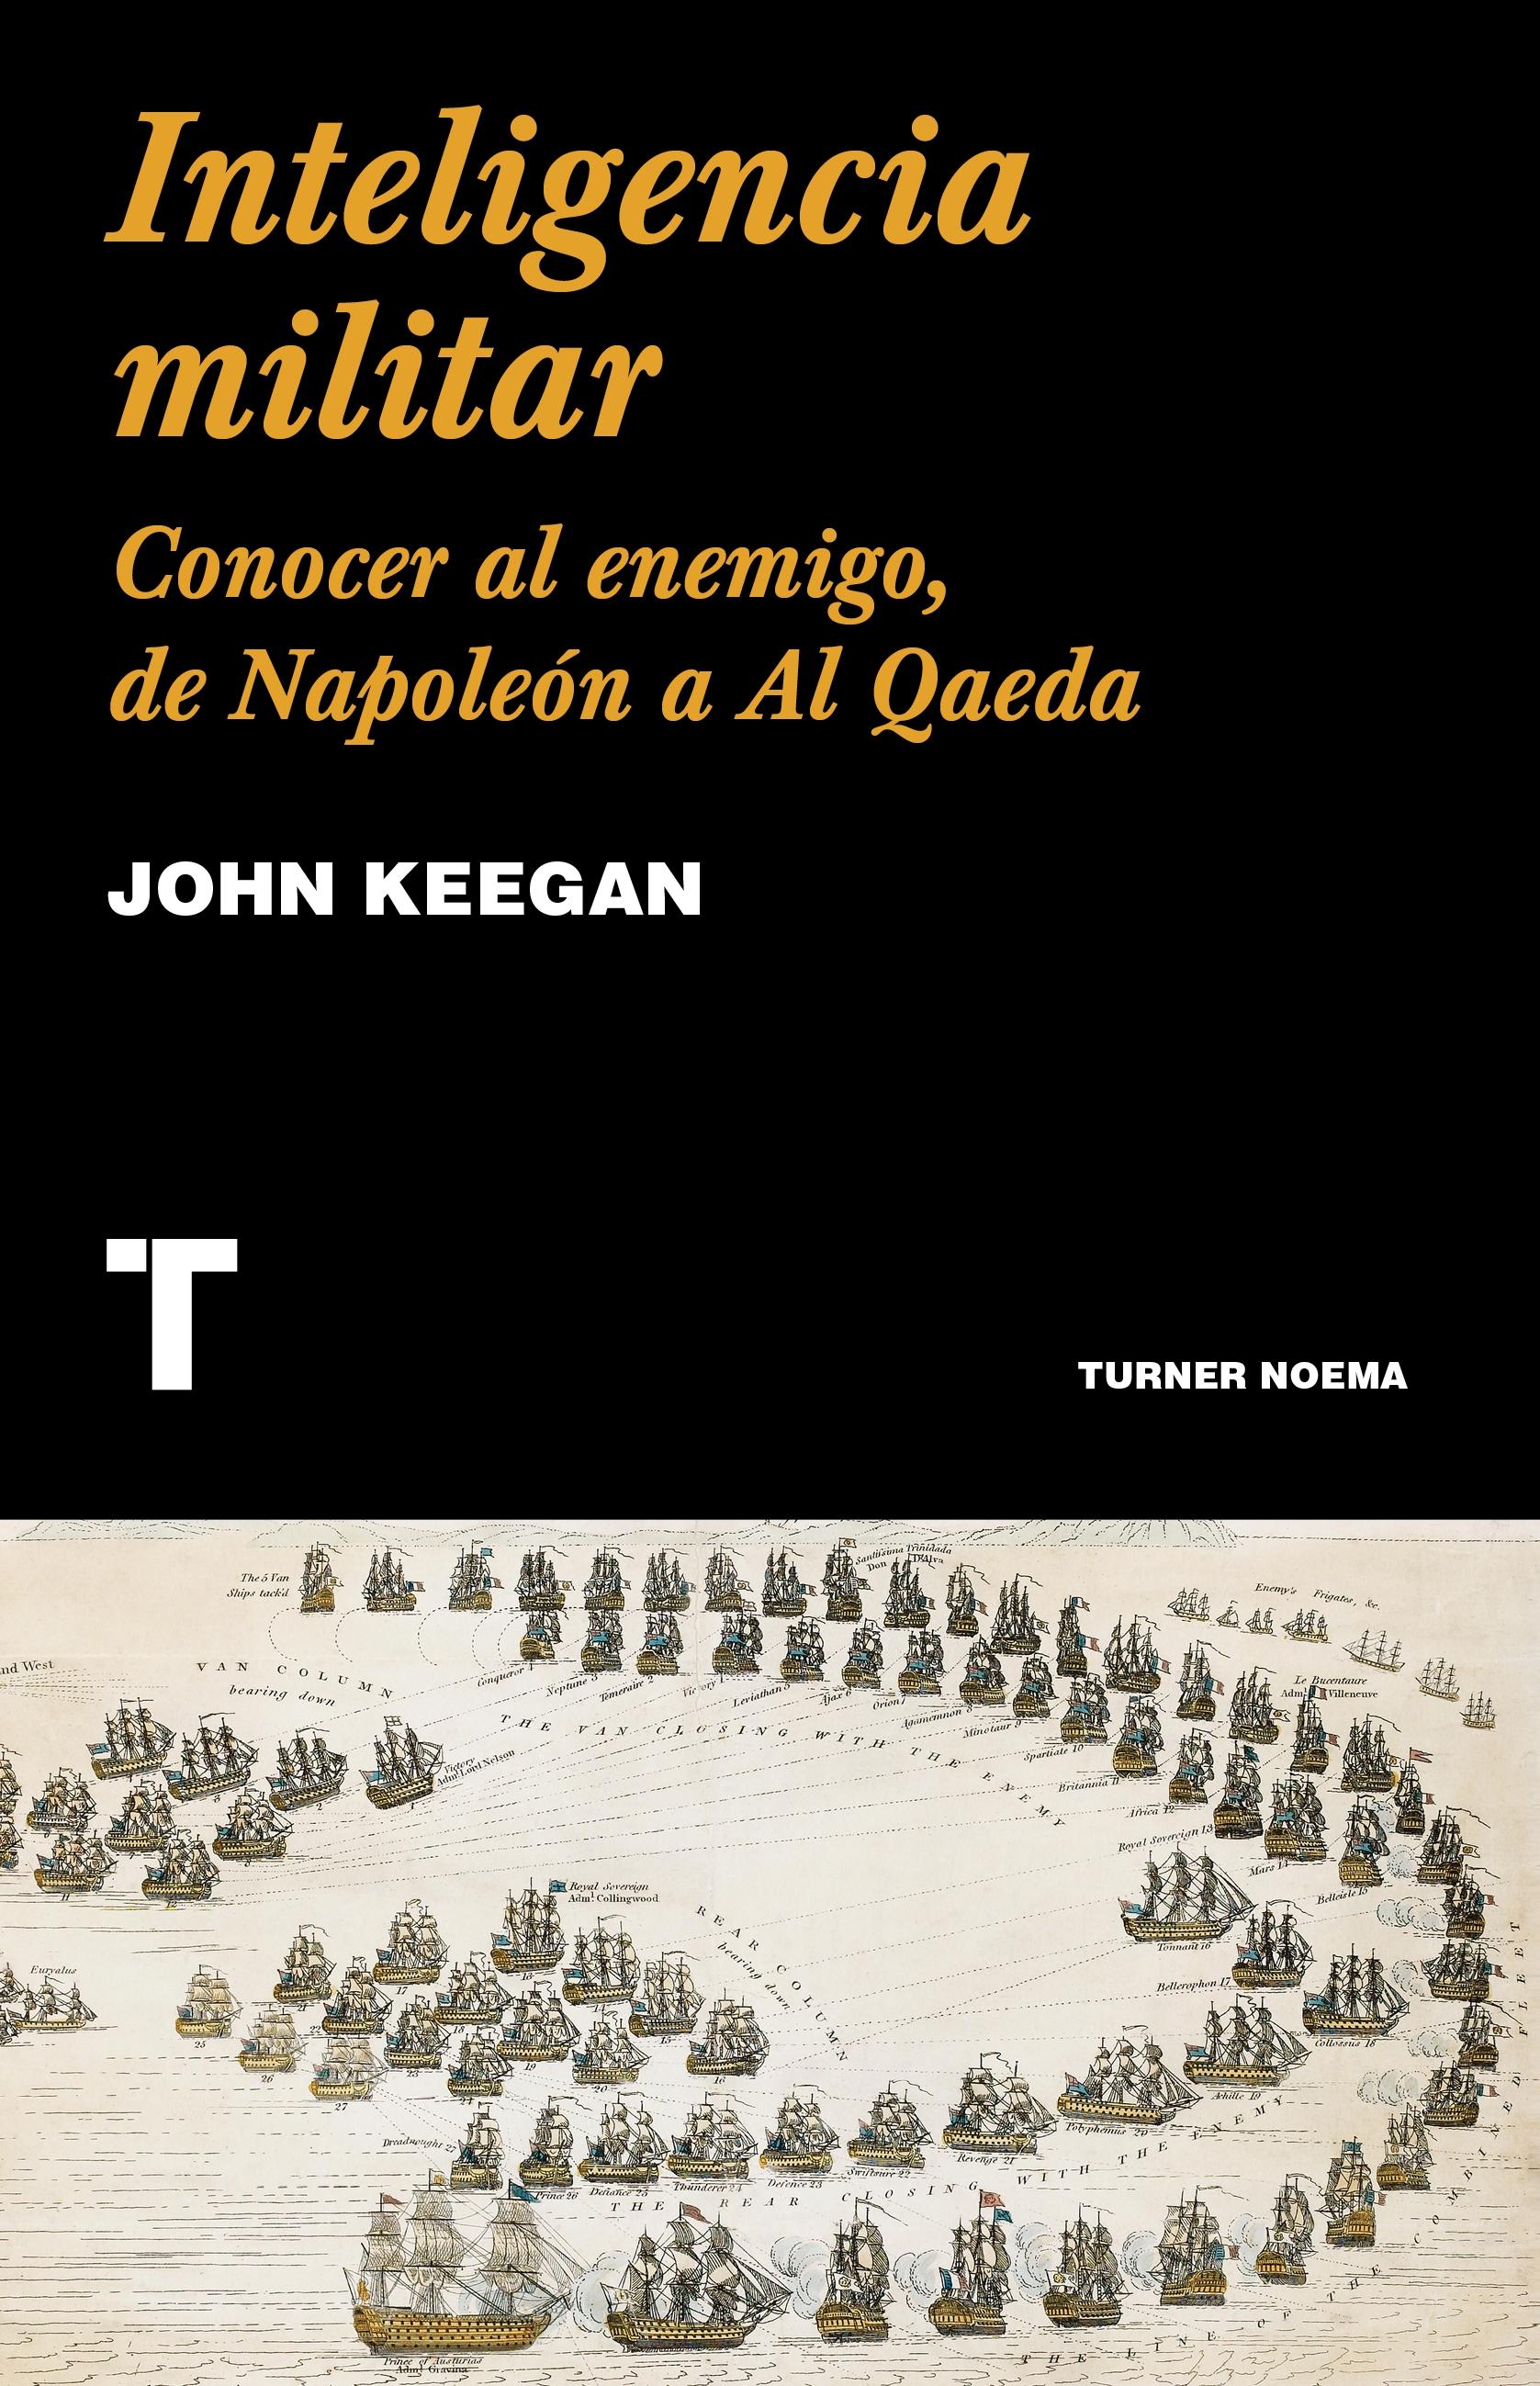 Inteligencia militar "Conocer al enemigo de Napoleón a Al Qaeda"